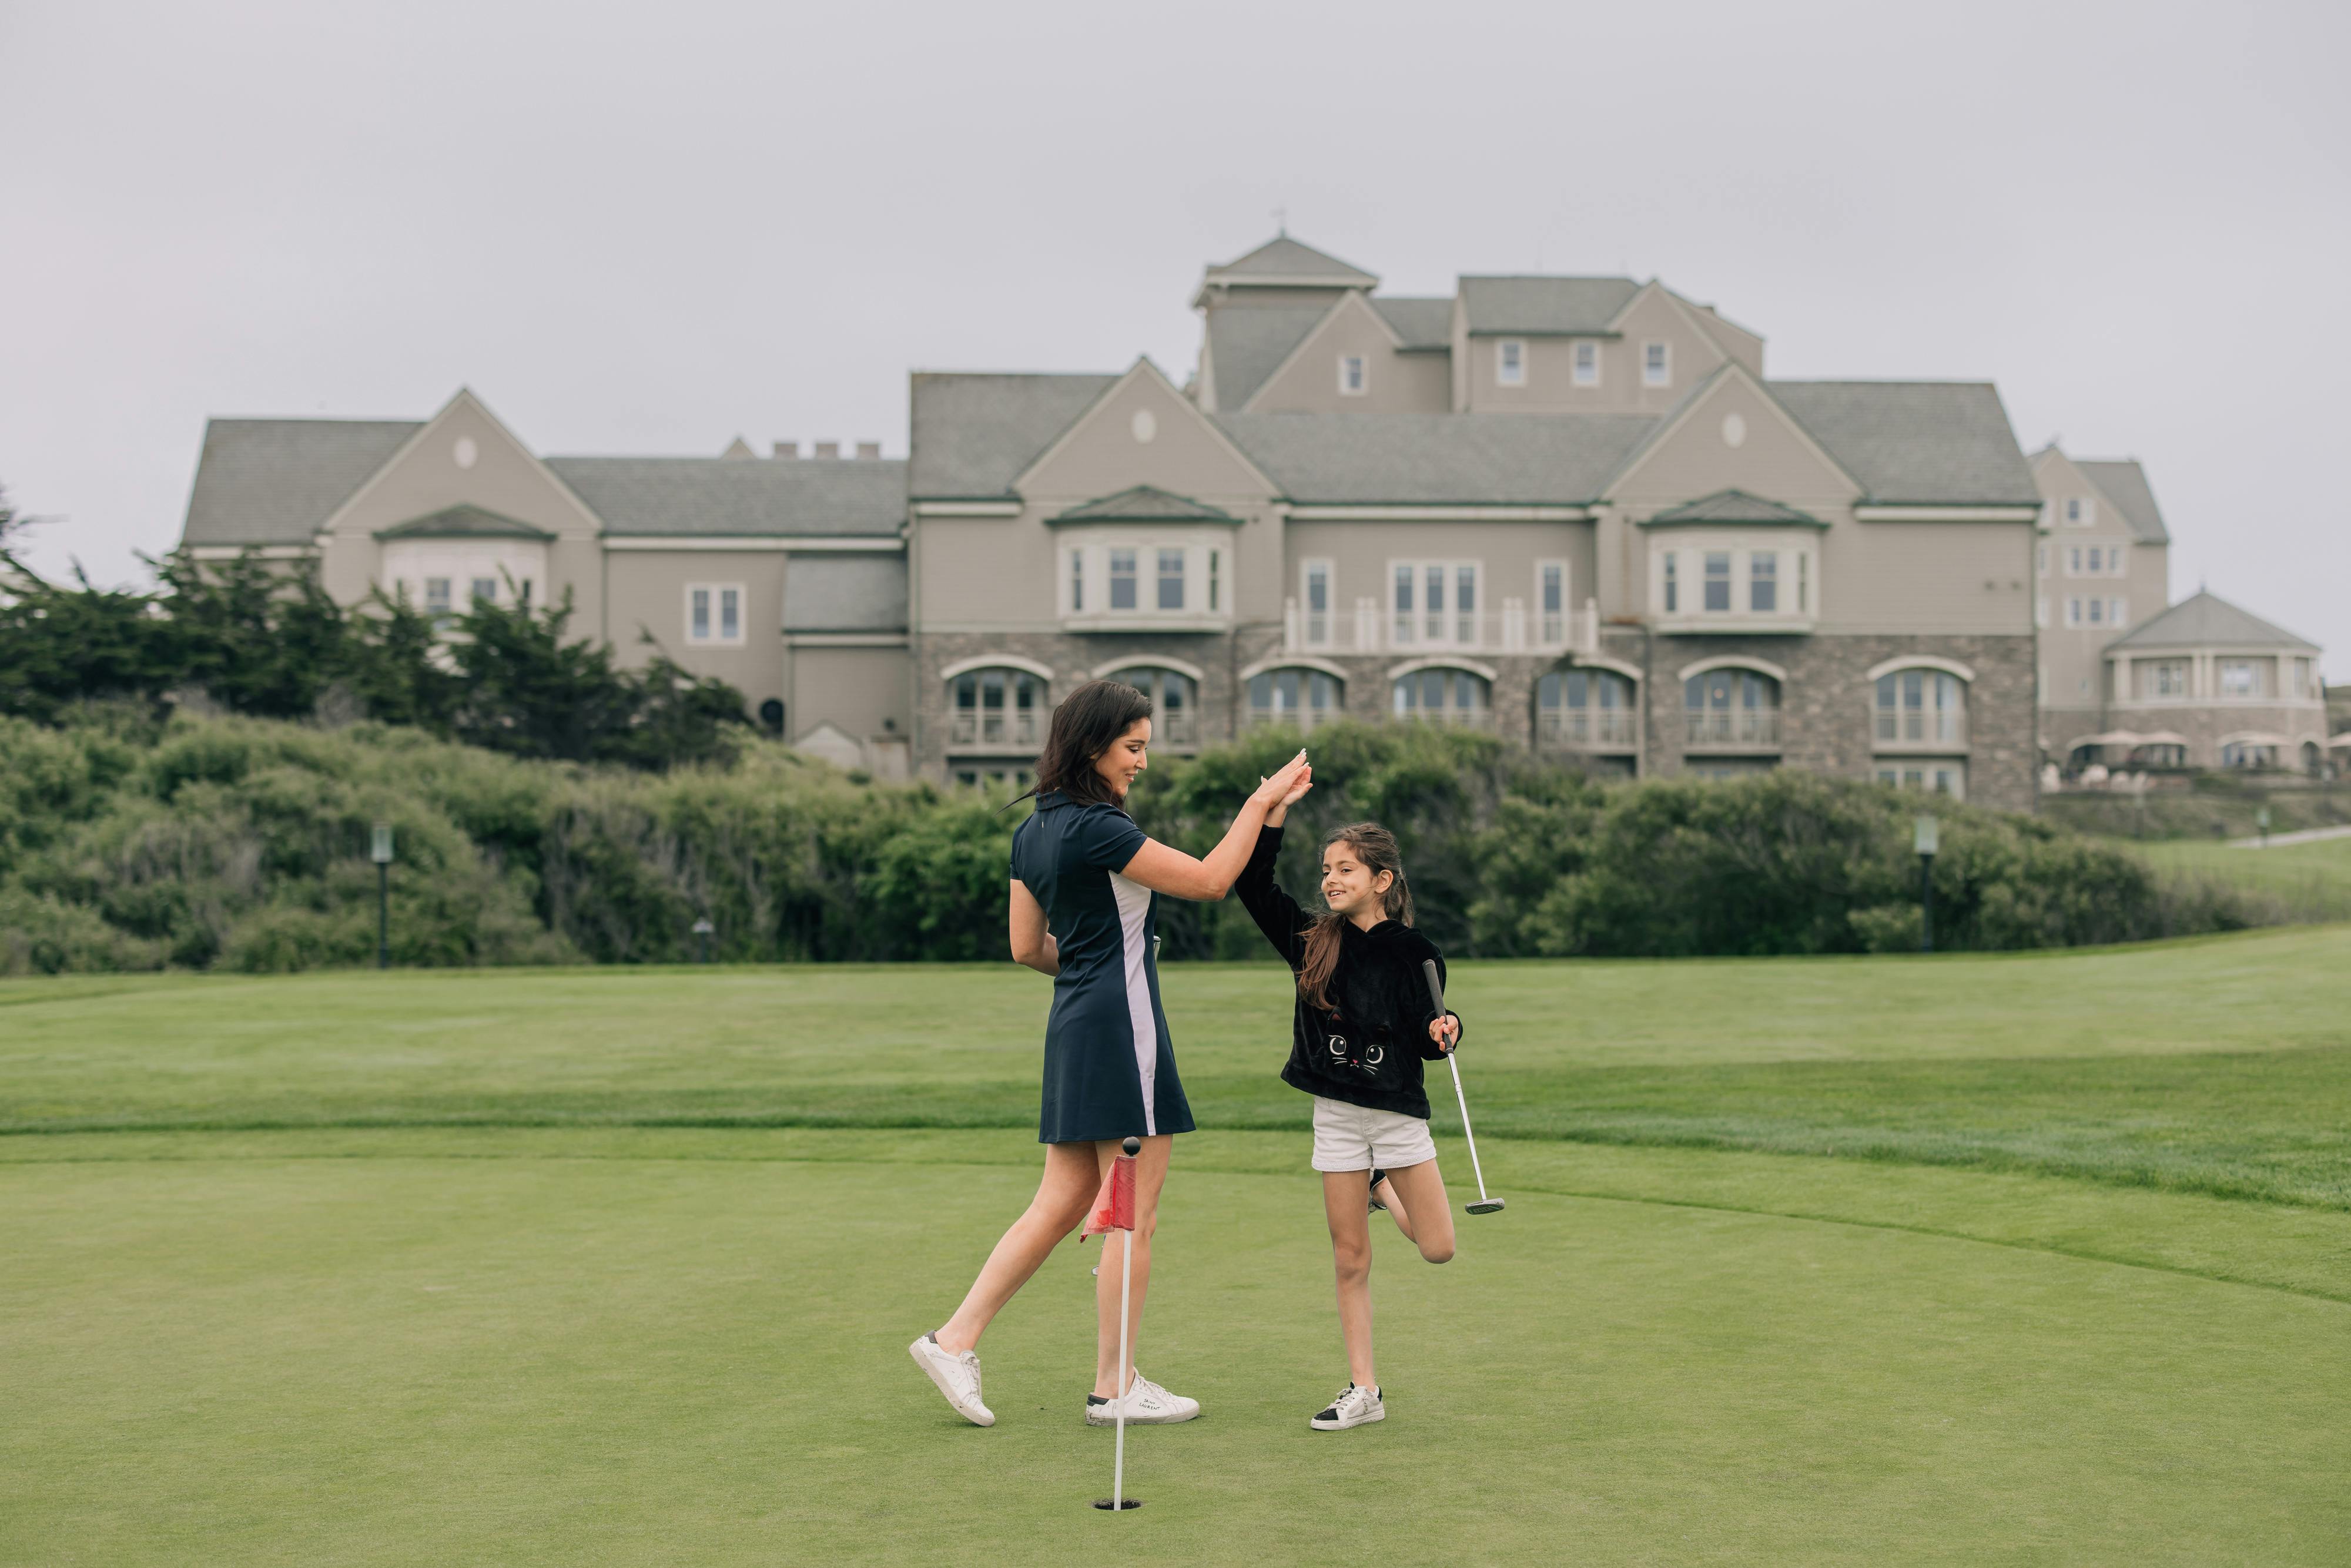 girls high fiving on a golf resort